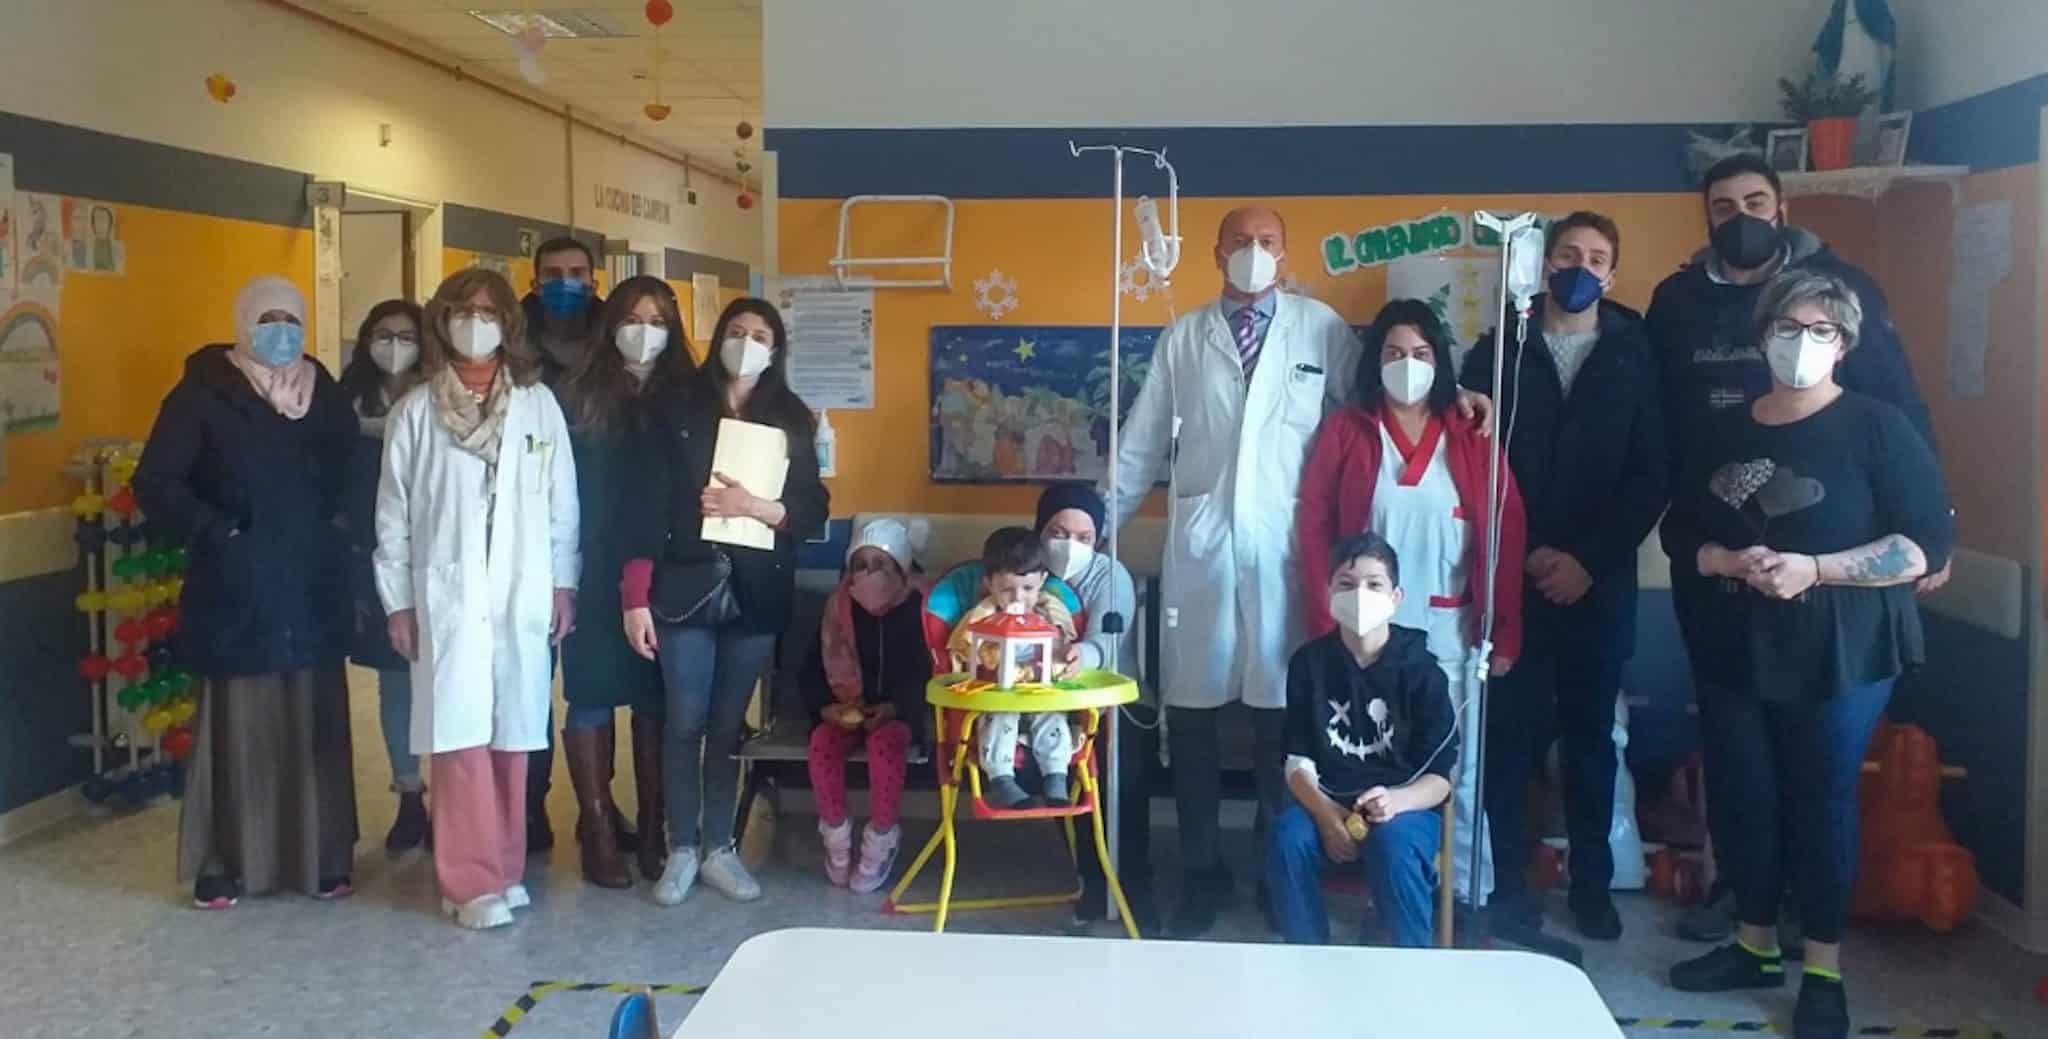 Nazione Futura Avezzano consegna dolciumi al reparto di pediatria dell'Ospedale, Simonelli: "beneficenza e solidarietà sono capisaldi di ogni società civile"